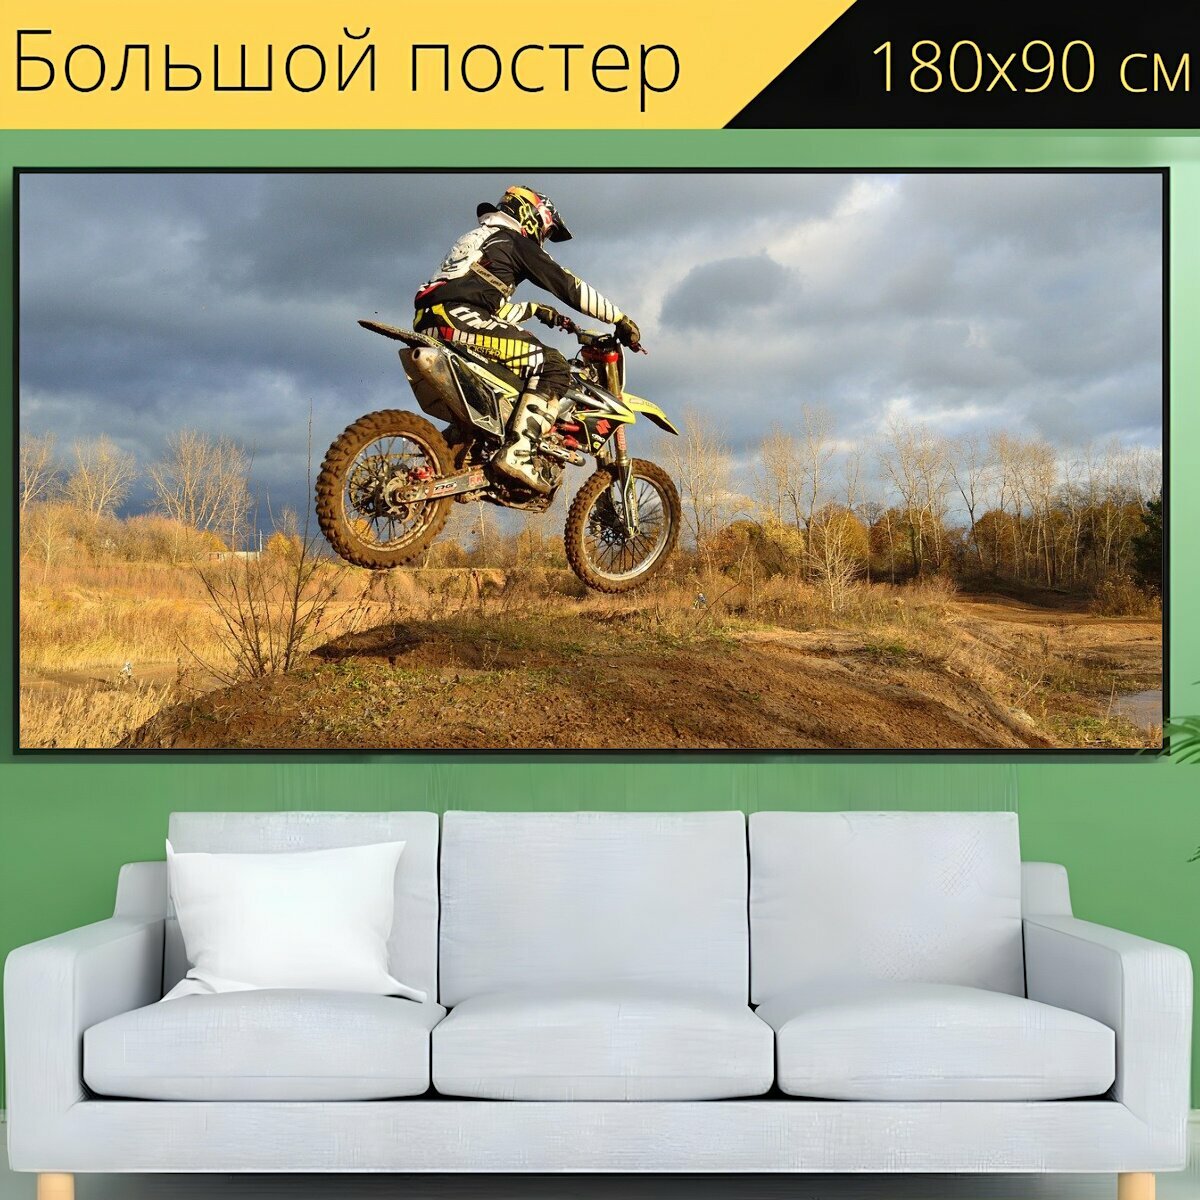 Большой постер "Велосипед грязи, мотоцикл, прыгать" 180 x 90 см. для интерьера